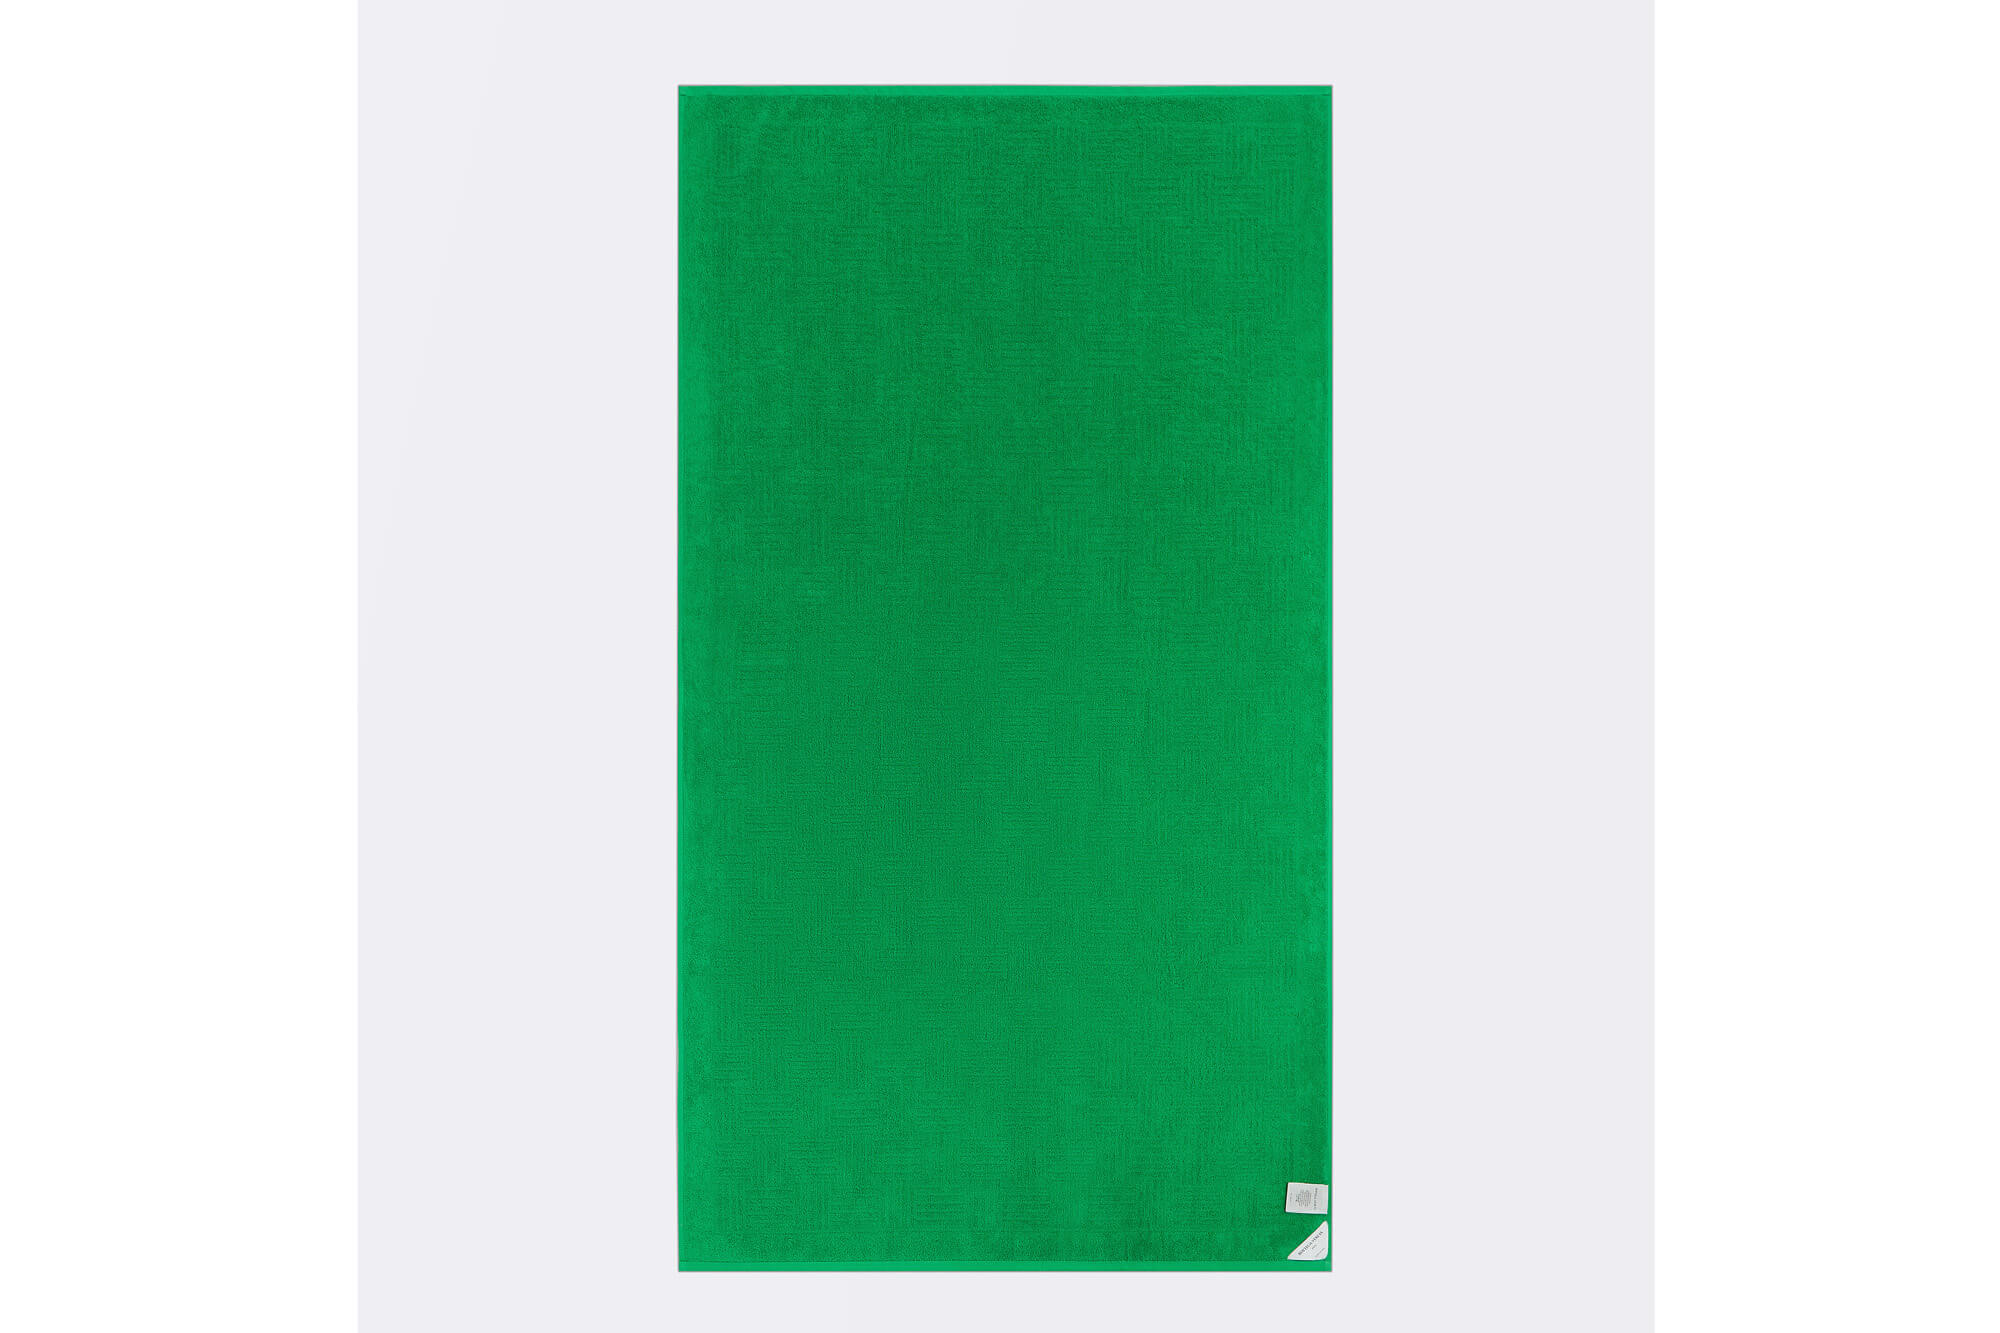 Пляжное полотенце  из хлопка 95Х175 Bottega Veneta, цвет Зеленый, фото 1